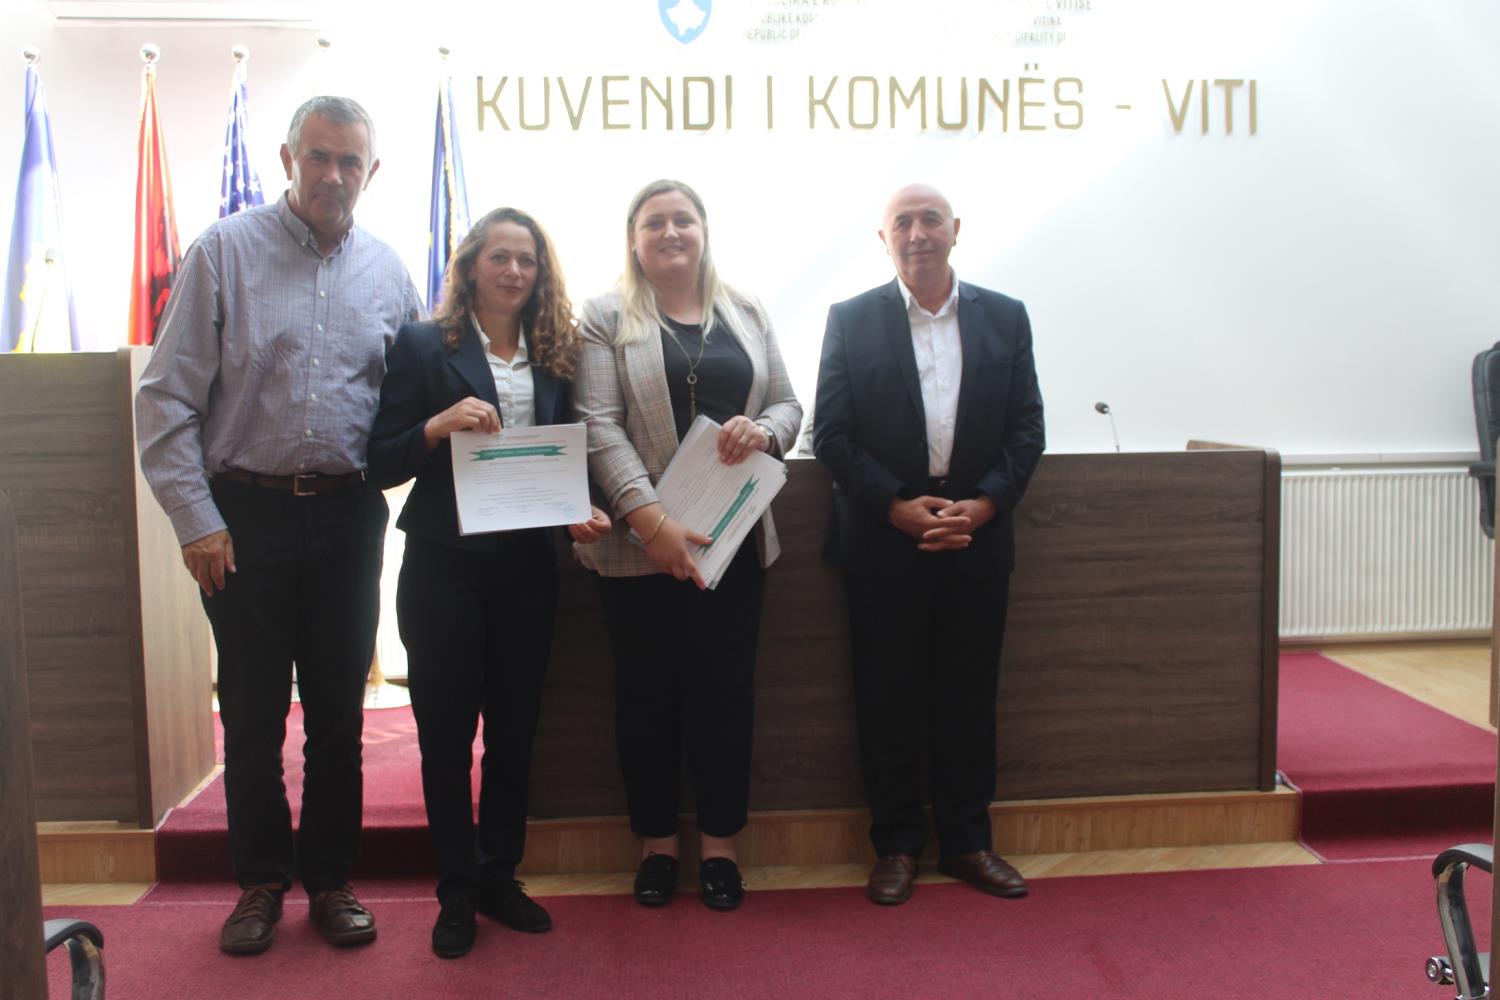 IADK çertifikon kandidatet nga Komuna e Vitisë